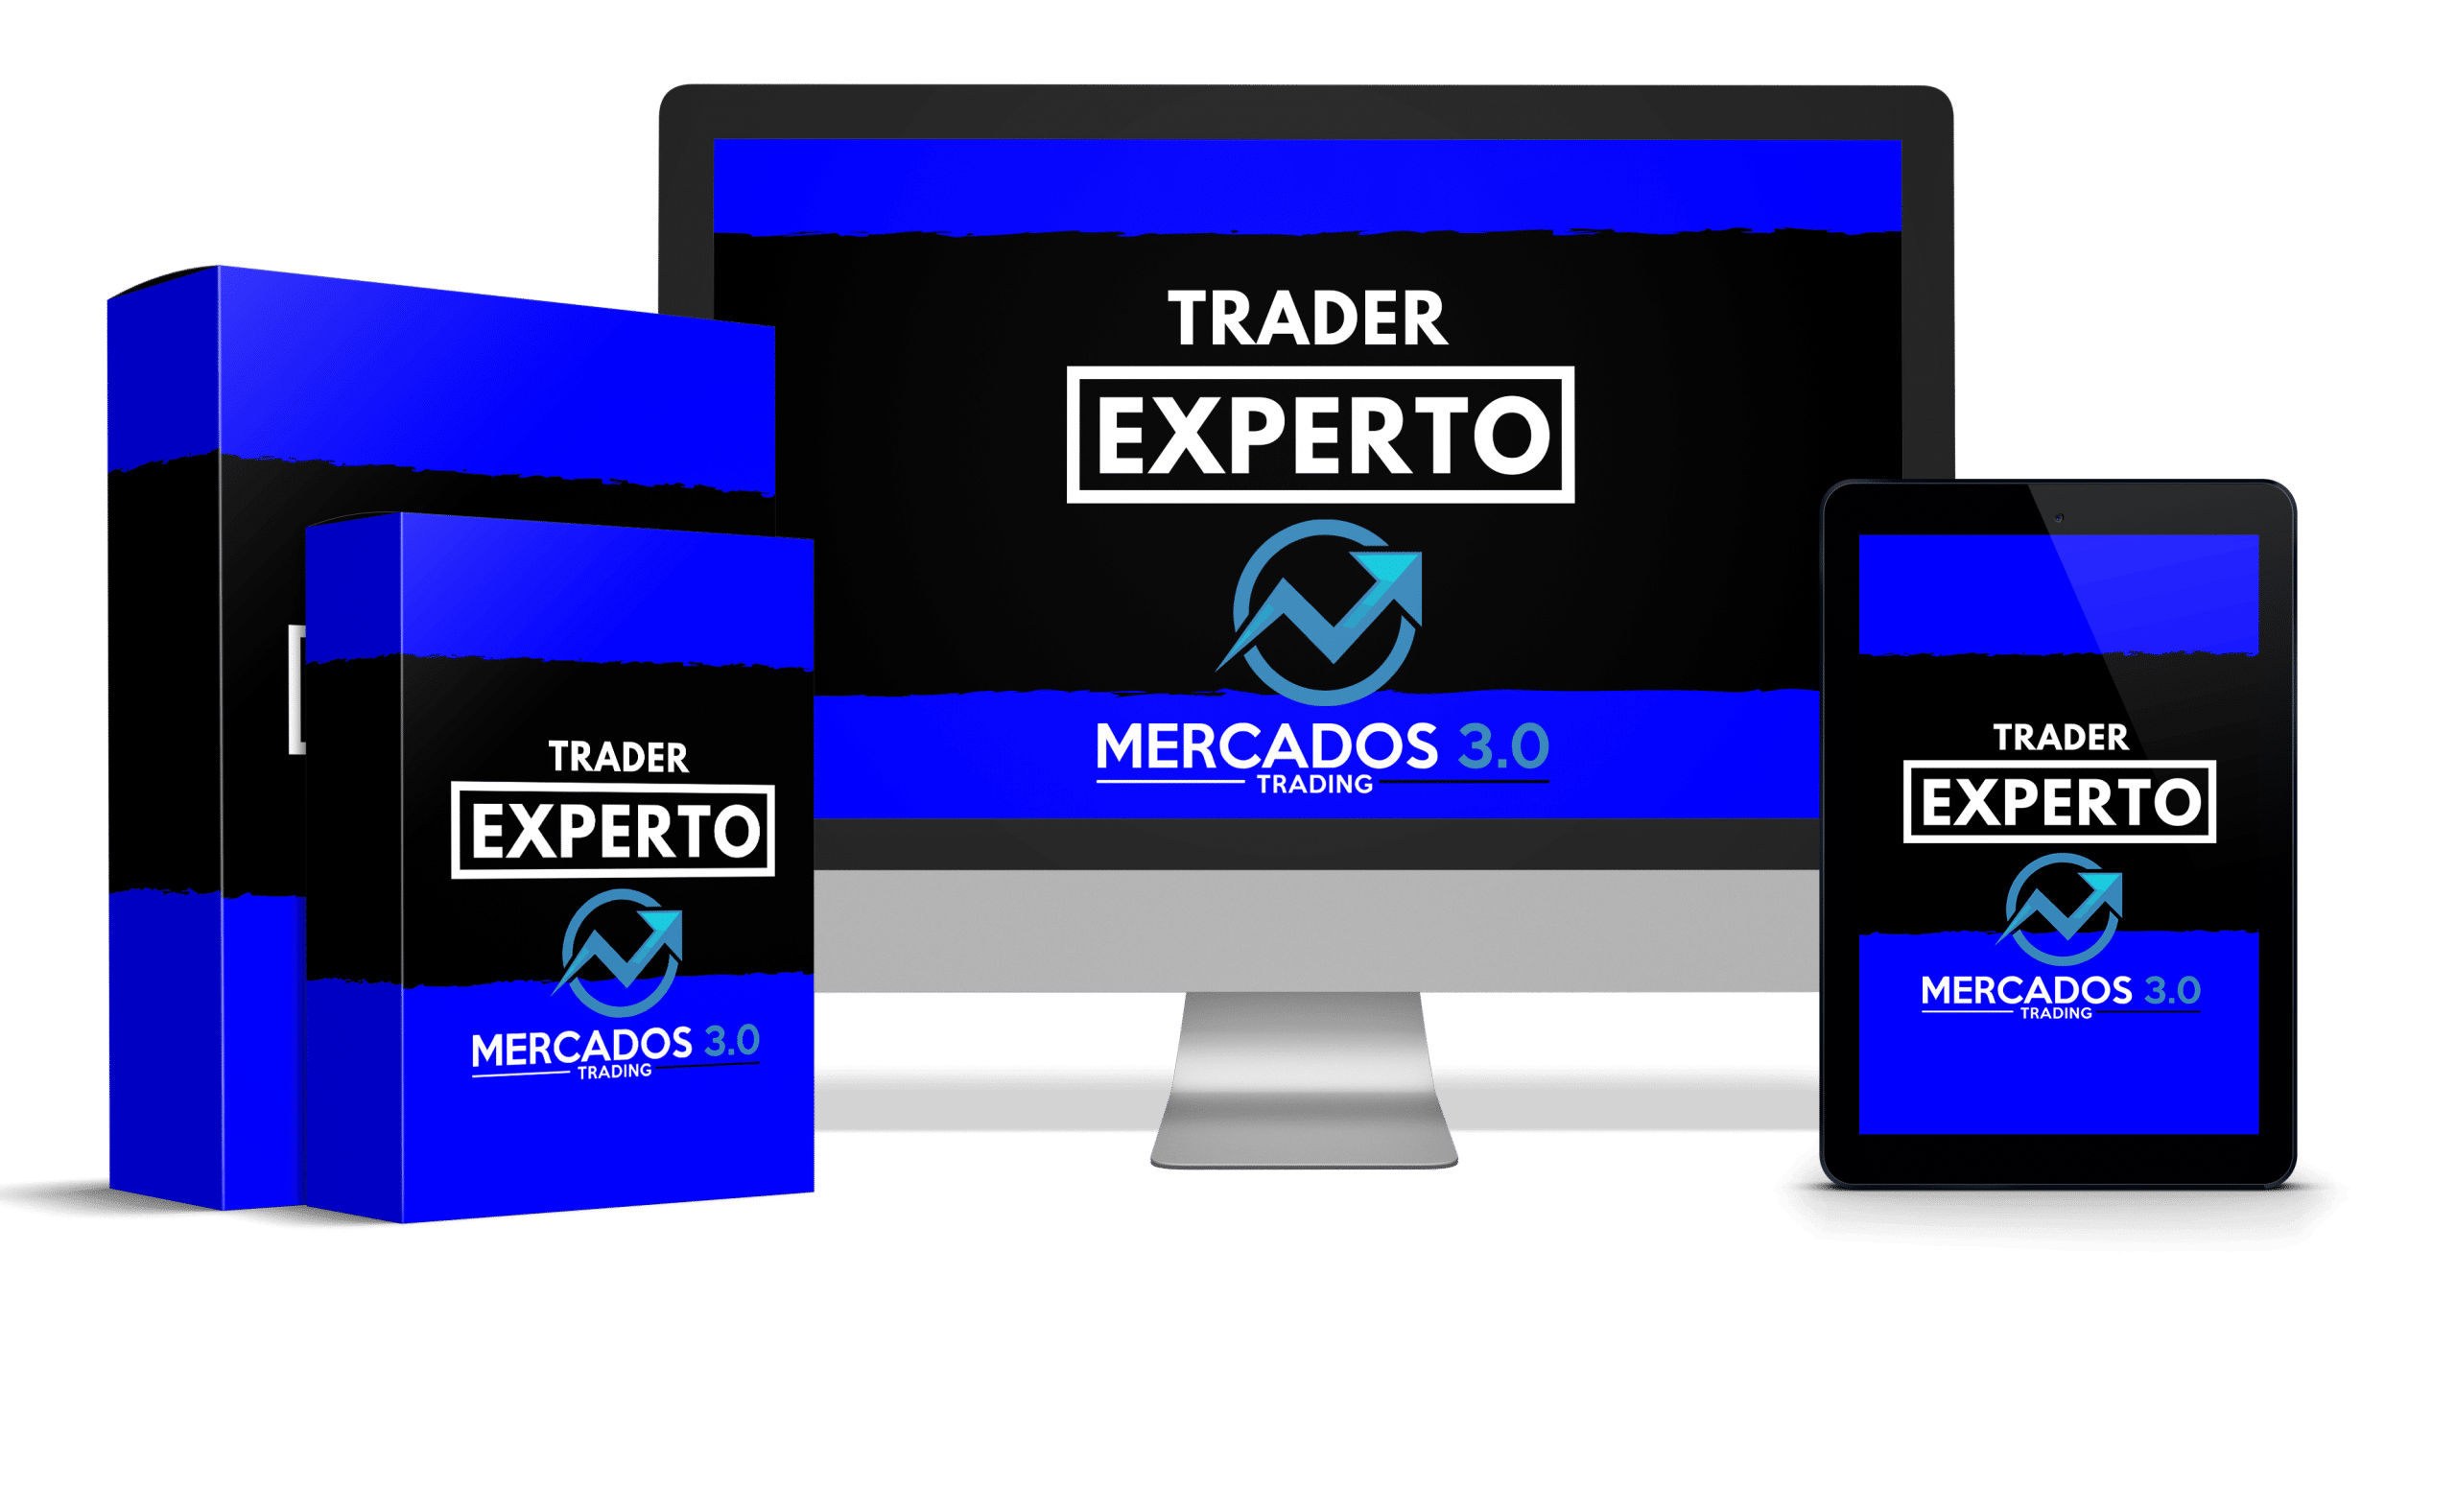 TRADER-EXPERTO-mercado